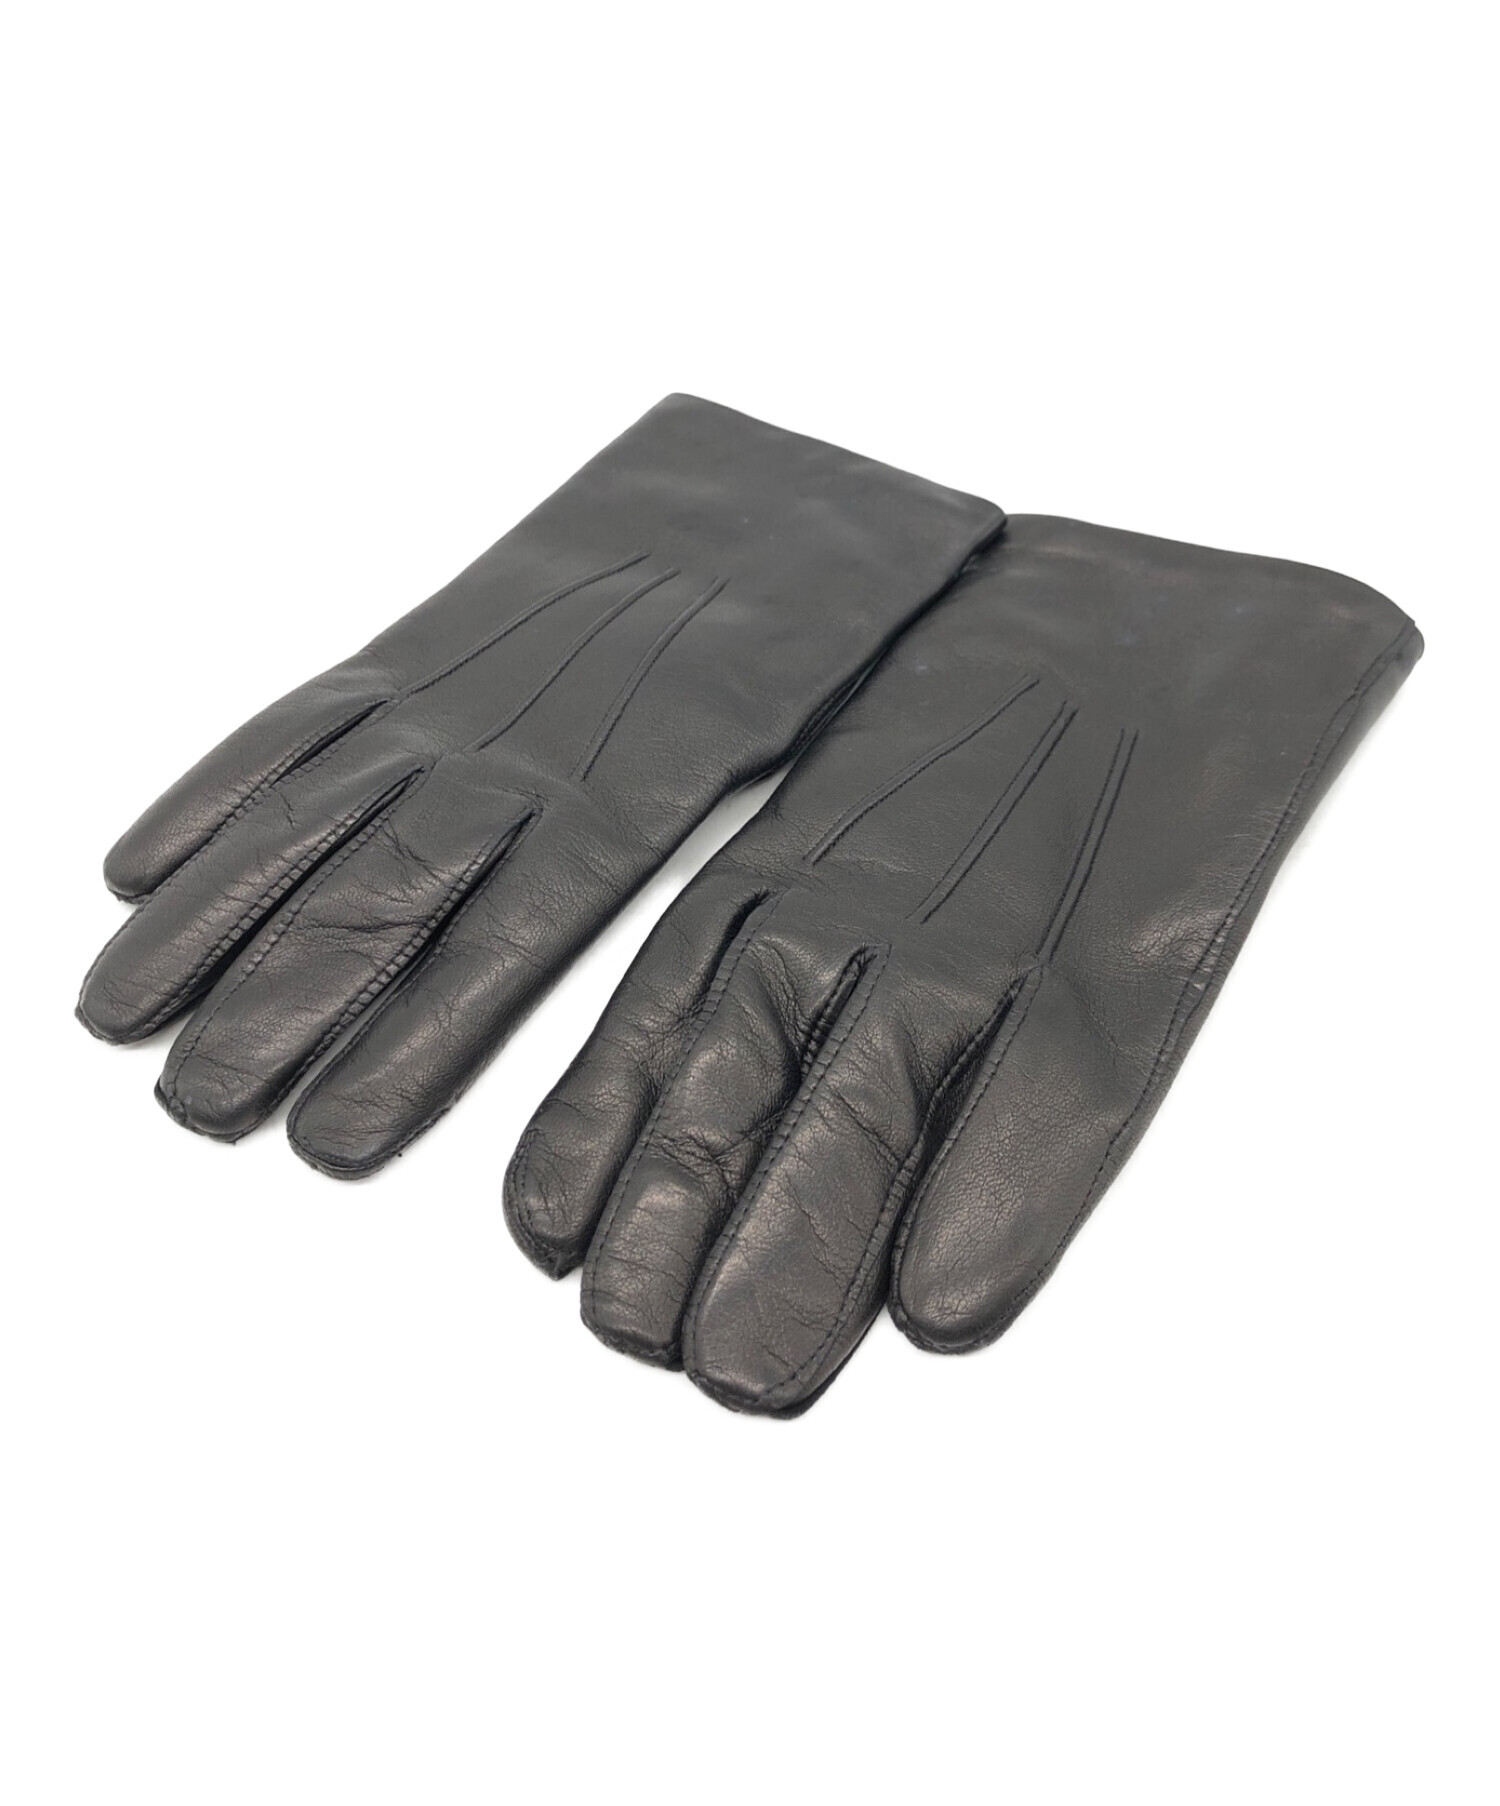 Sermoneta gloves サイズ7 裏地カシミヤ - 手袋